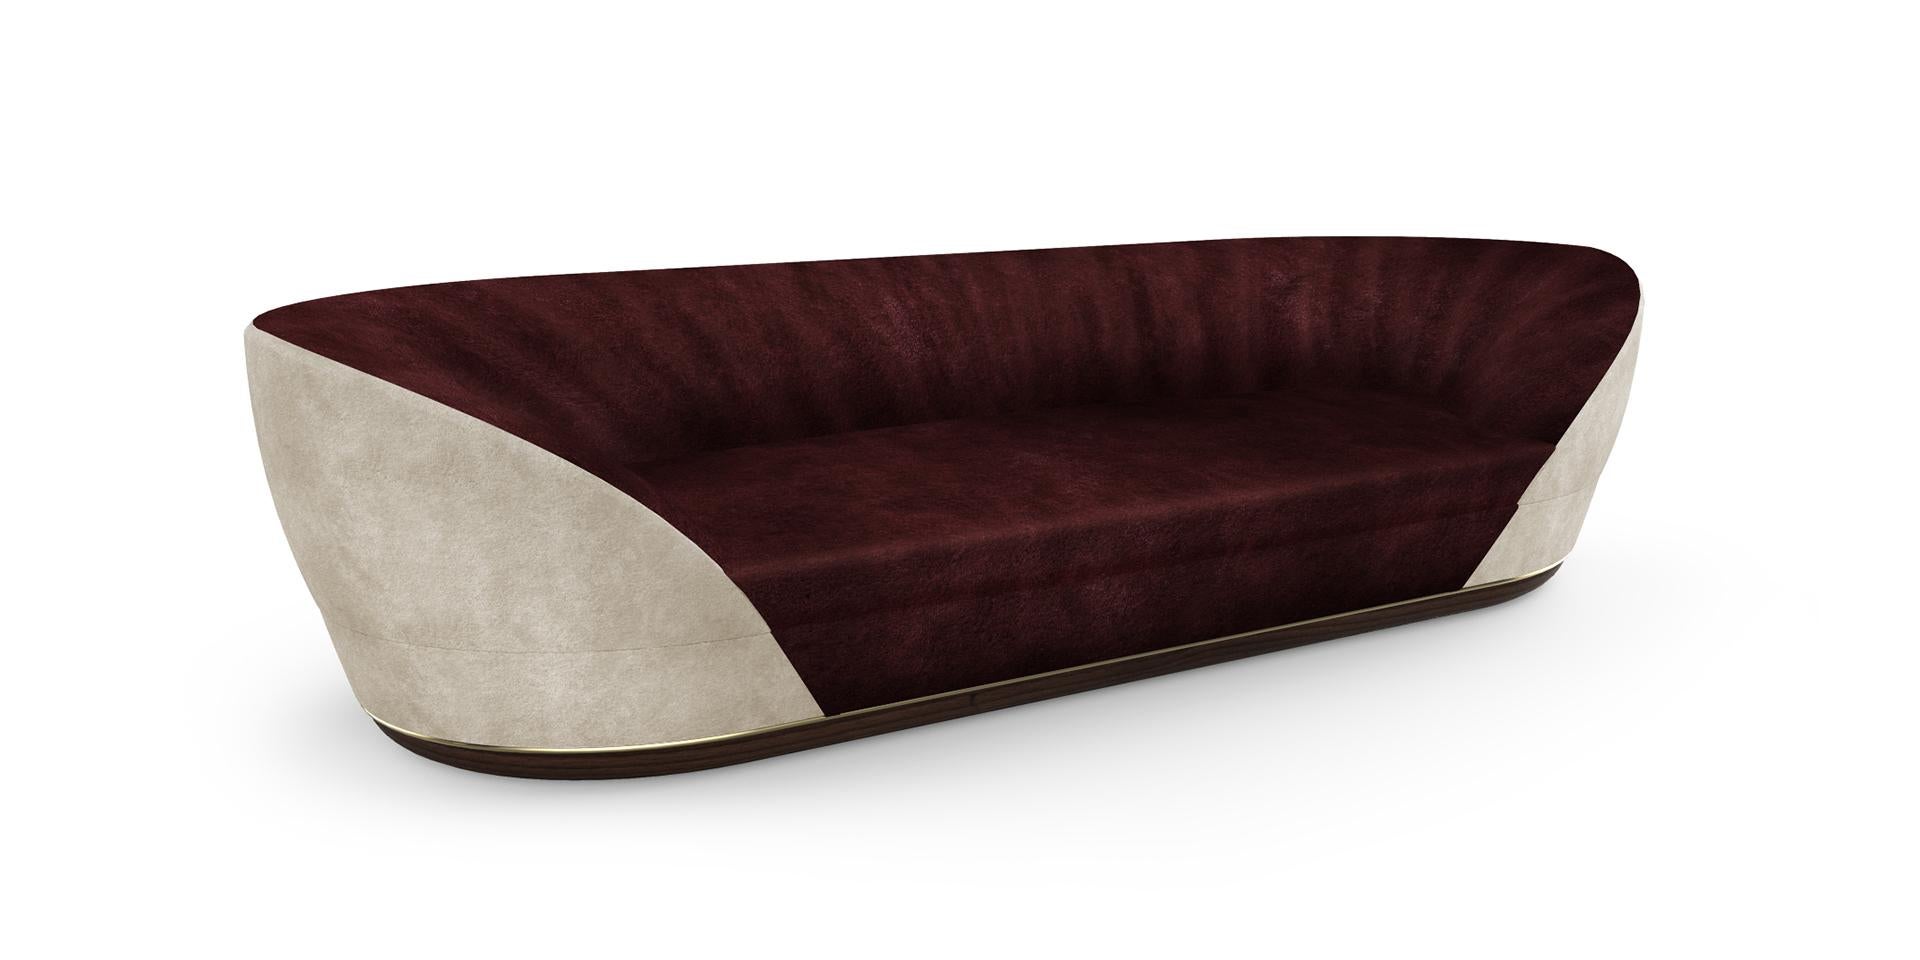 Dieses bequeme und schöne Sofa ist ideal für alle, die eine gemütliche und elegante Atmosphäre im Wohnzimmer suchen. Mit Samt drapiert Textur ist perfekt für intensive Momente der Entspannung.

Gepolstert mit supersoften Stoffen. 
Fußteil aus